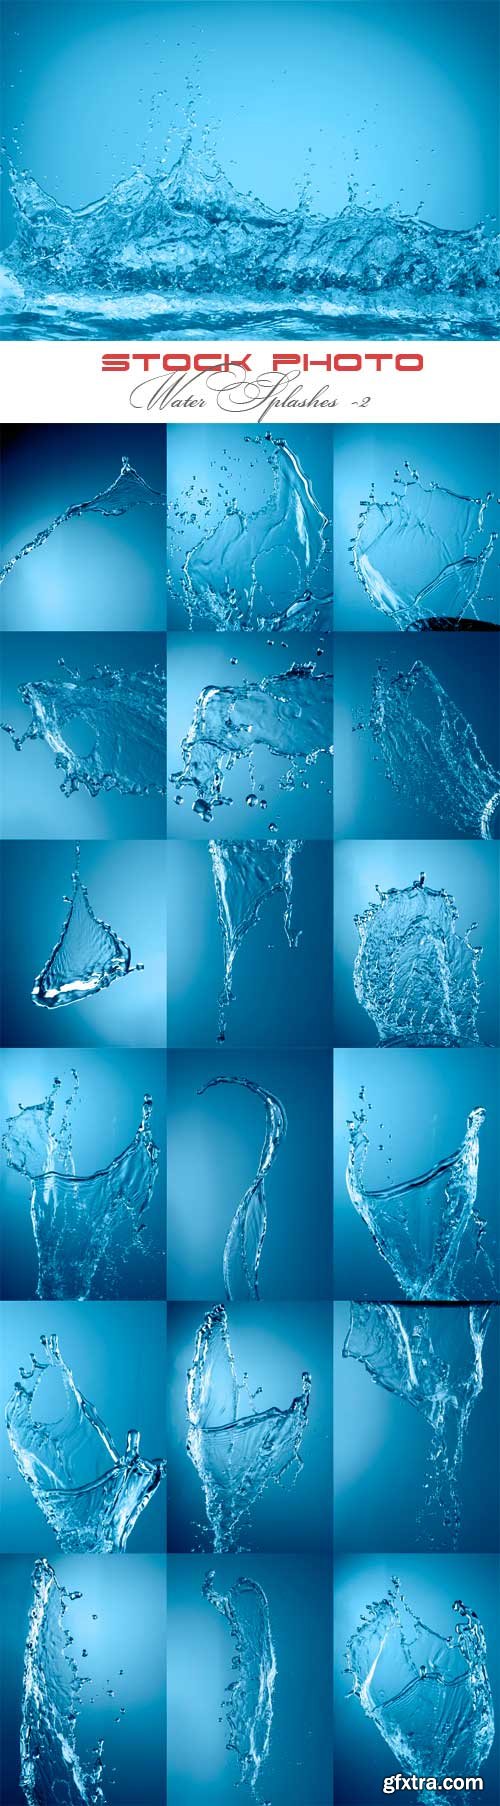 Water splashes raster graphics -2